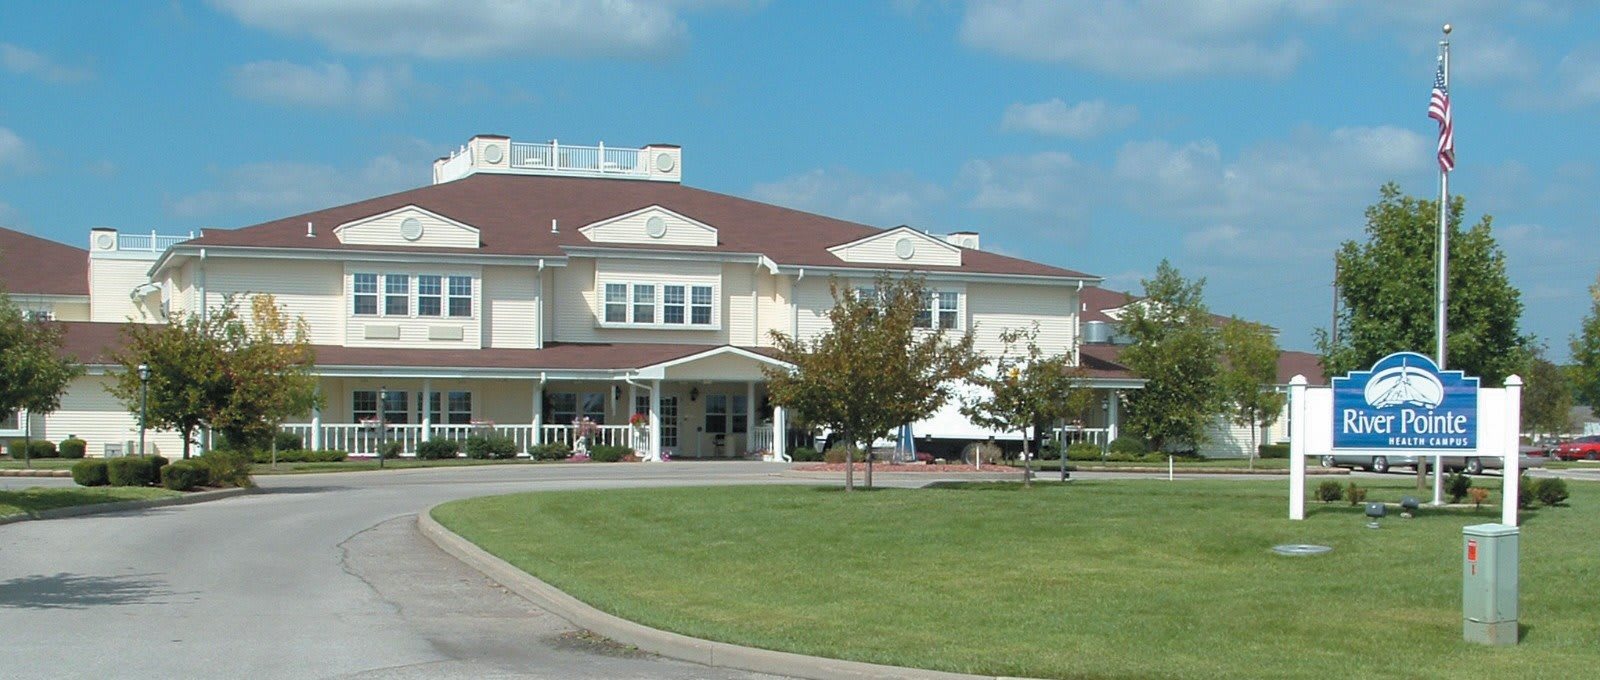 River Pointe Health Campus, Evansville, IN